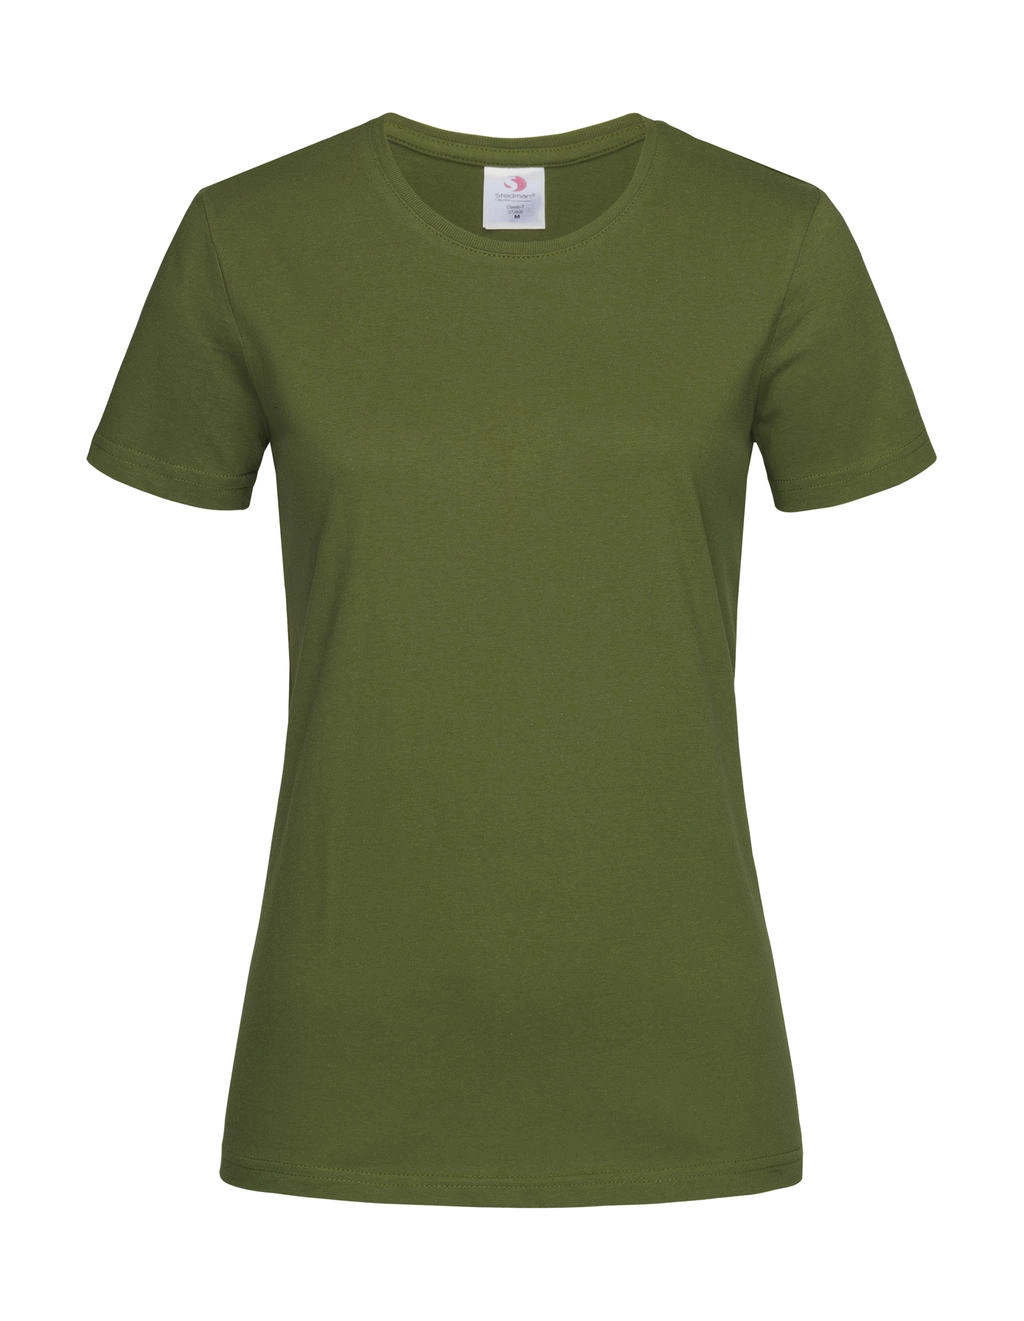 Classic-T Fitted Women zum Besticken und Bedrucken in der Farbe Hunters Green mit Ihren Logo, Schriftzug oder Motiv.